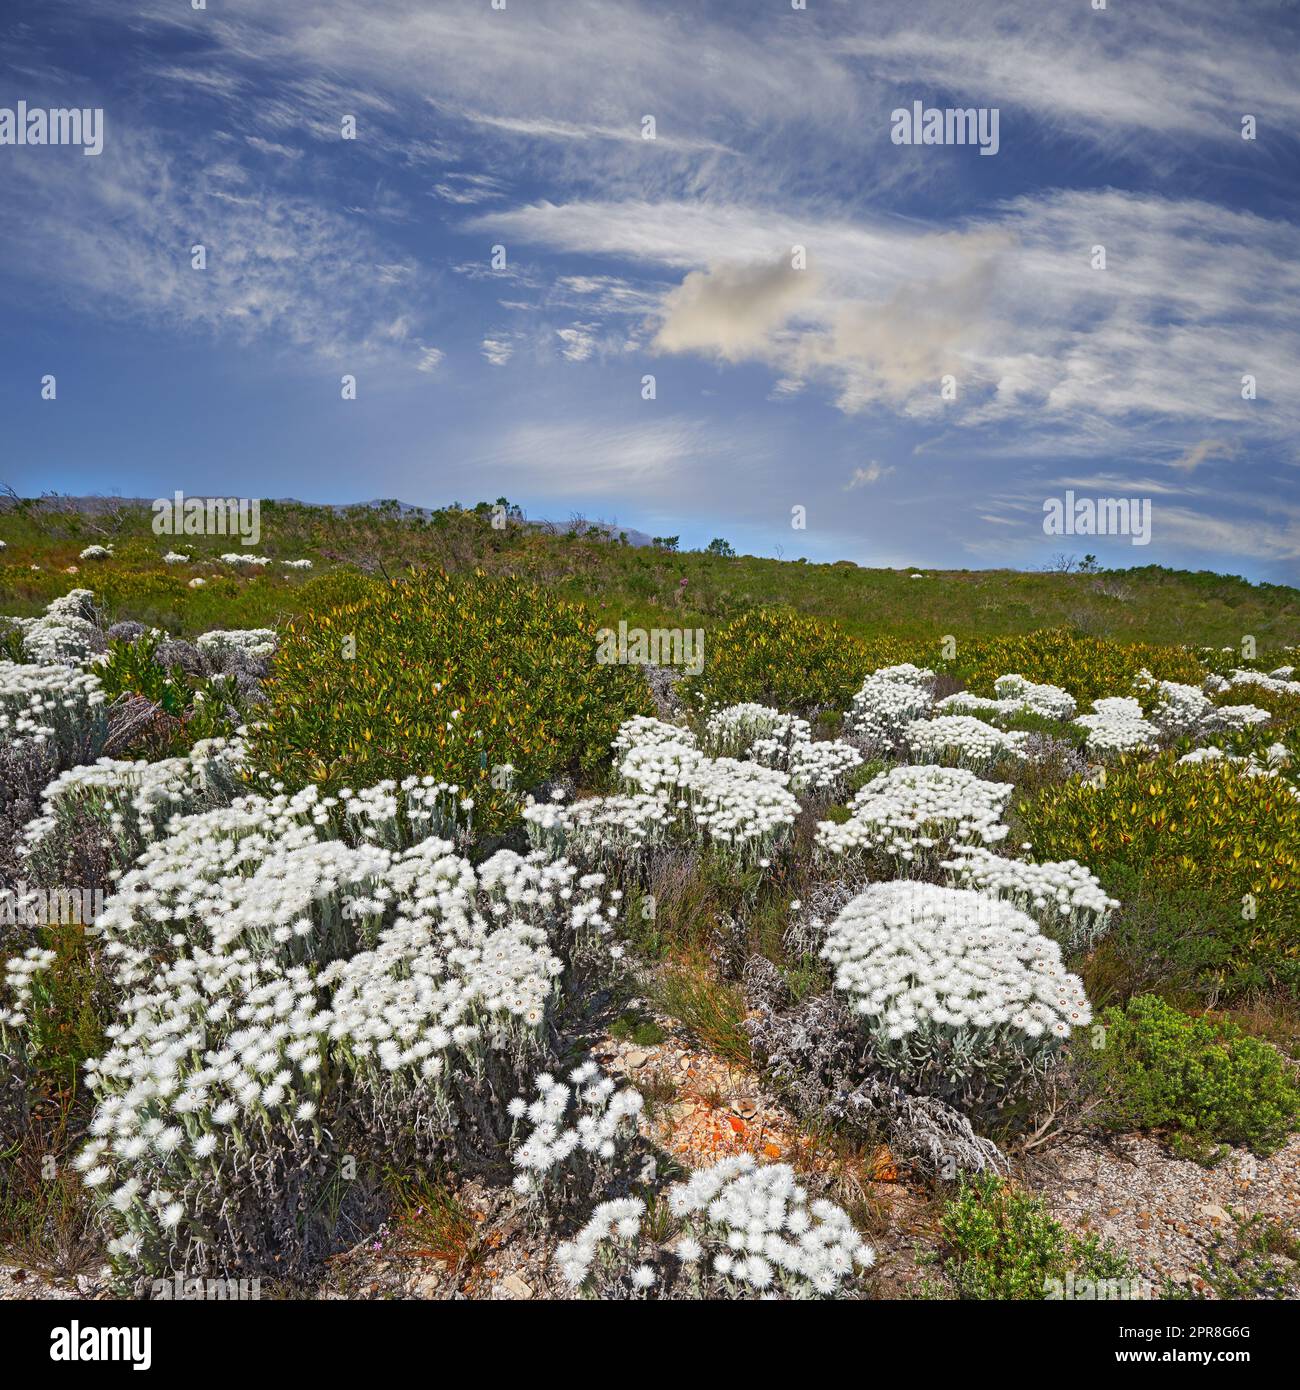 Fynbos dans le parc national de Table Mountain, Cap de bonne espérance, Afrique du Sud. Paysage pittoresque avec de fines espèces indigènes de plantes et de fleurs de brousse qui poussent dans la nature avec fond bleu ciel Banque D'Images